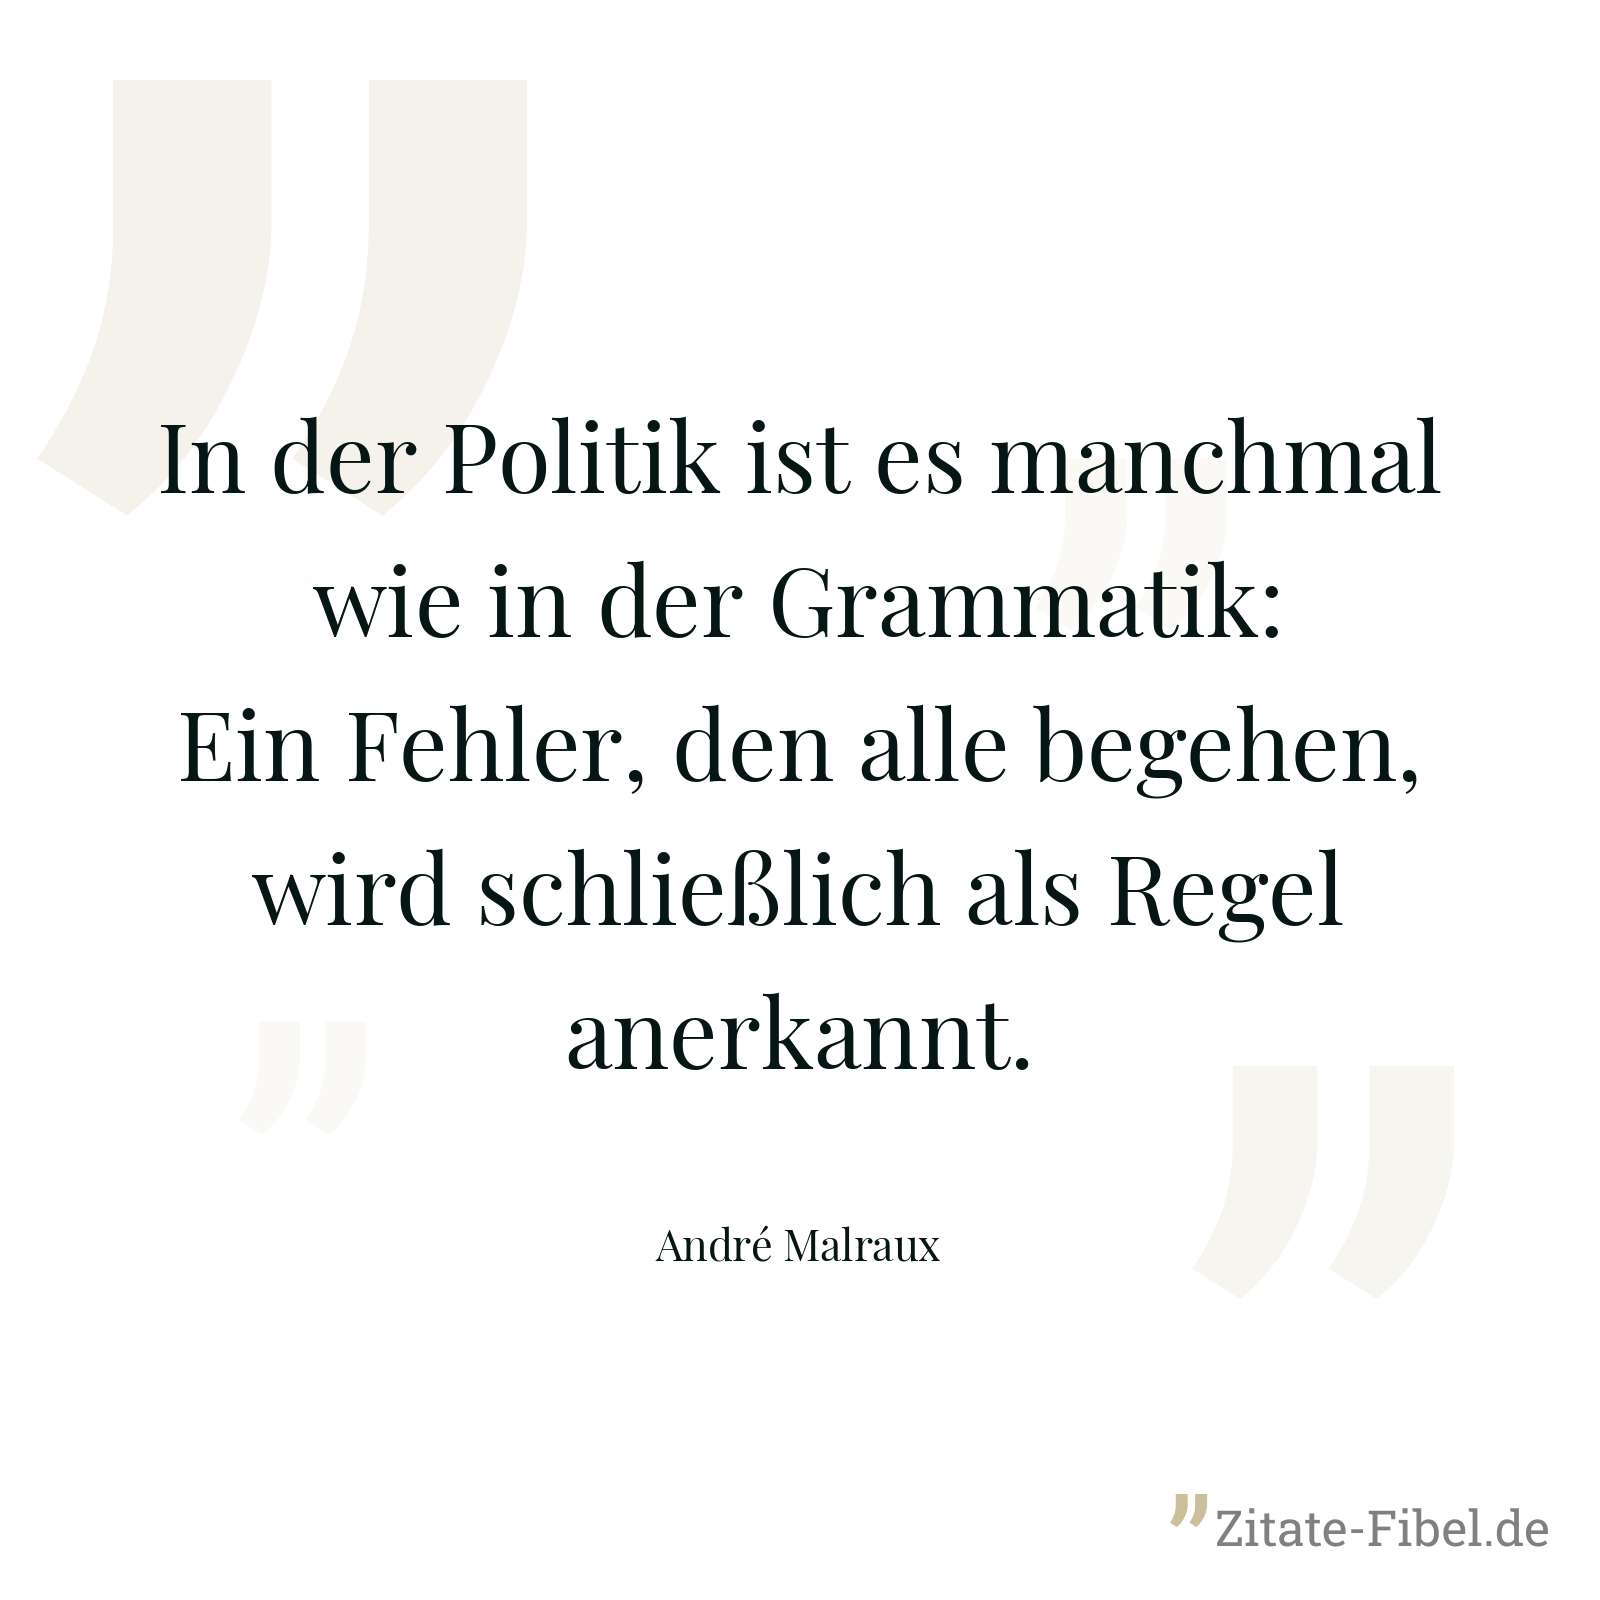 In der Politik ist es manchmal wie in der Grammatik: Ein Fehler, den alle begehen, wird schließlich als Regel anerkannt. - André Malraux